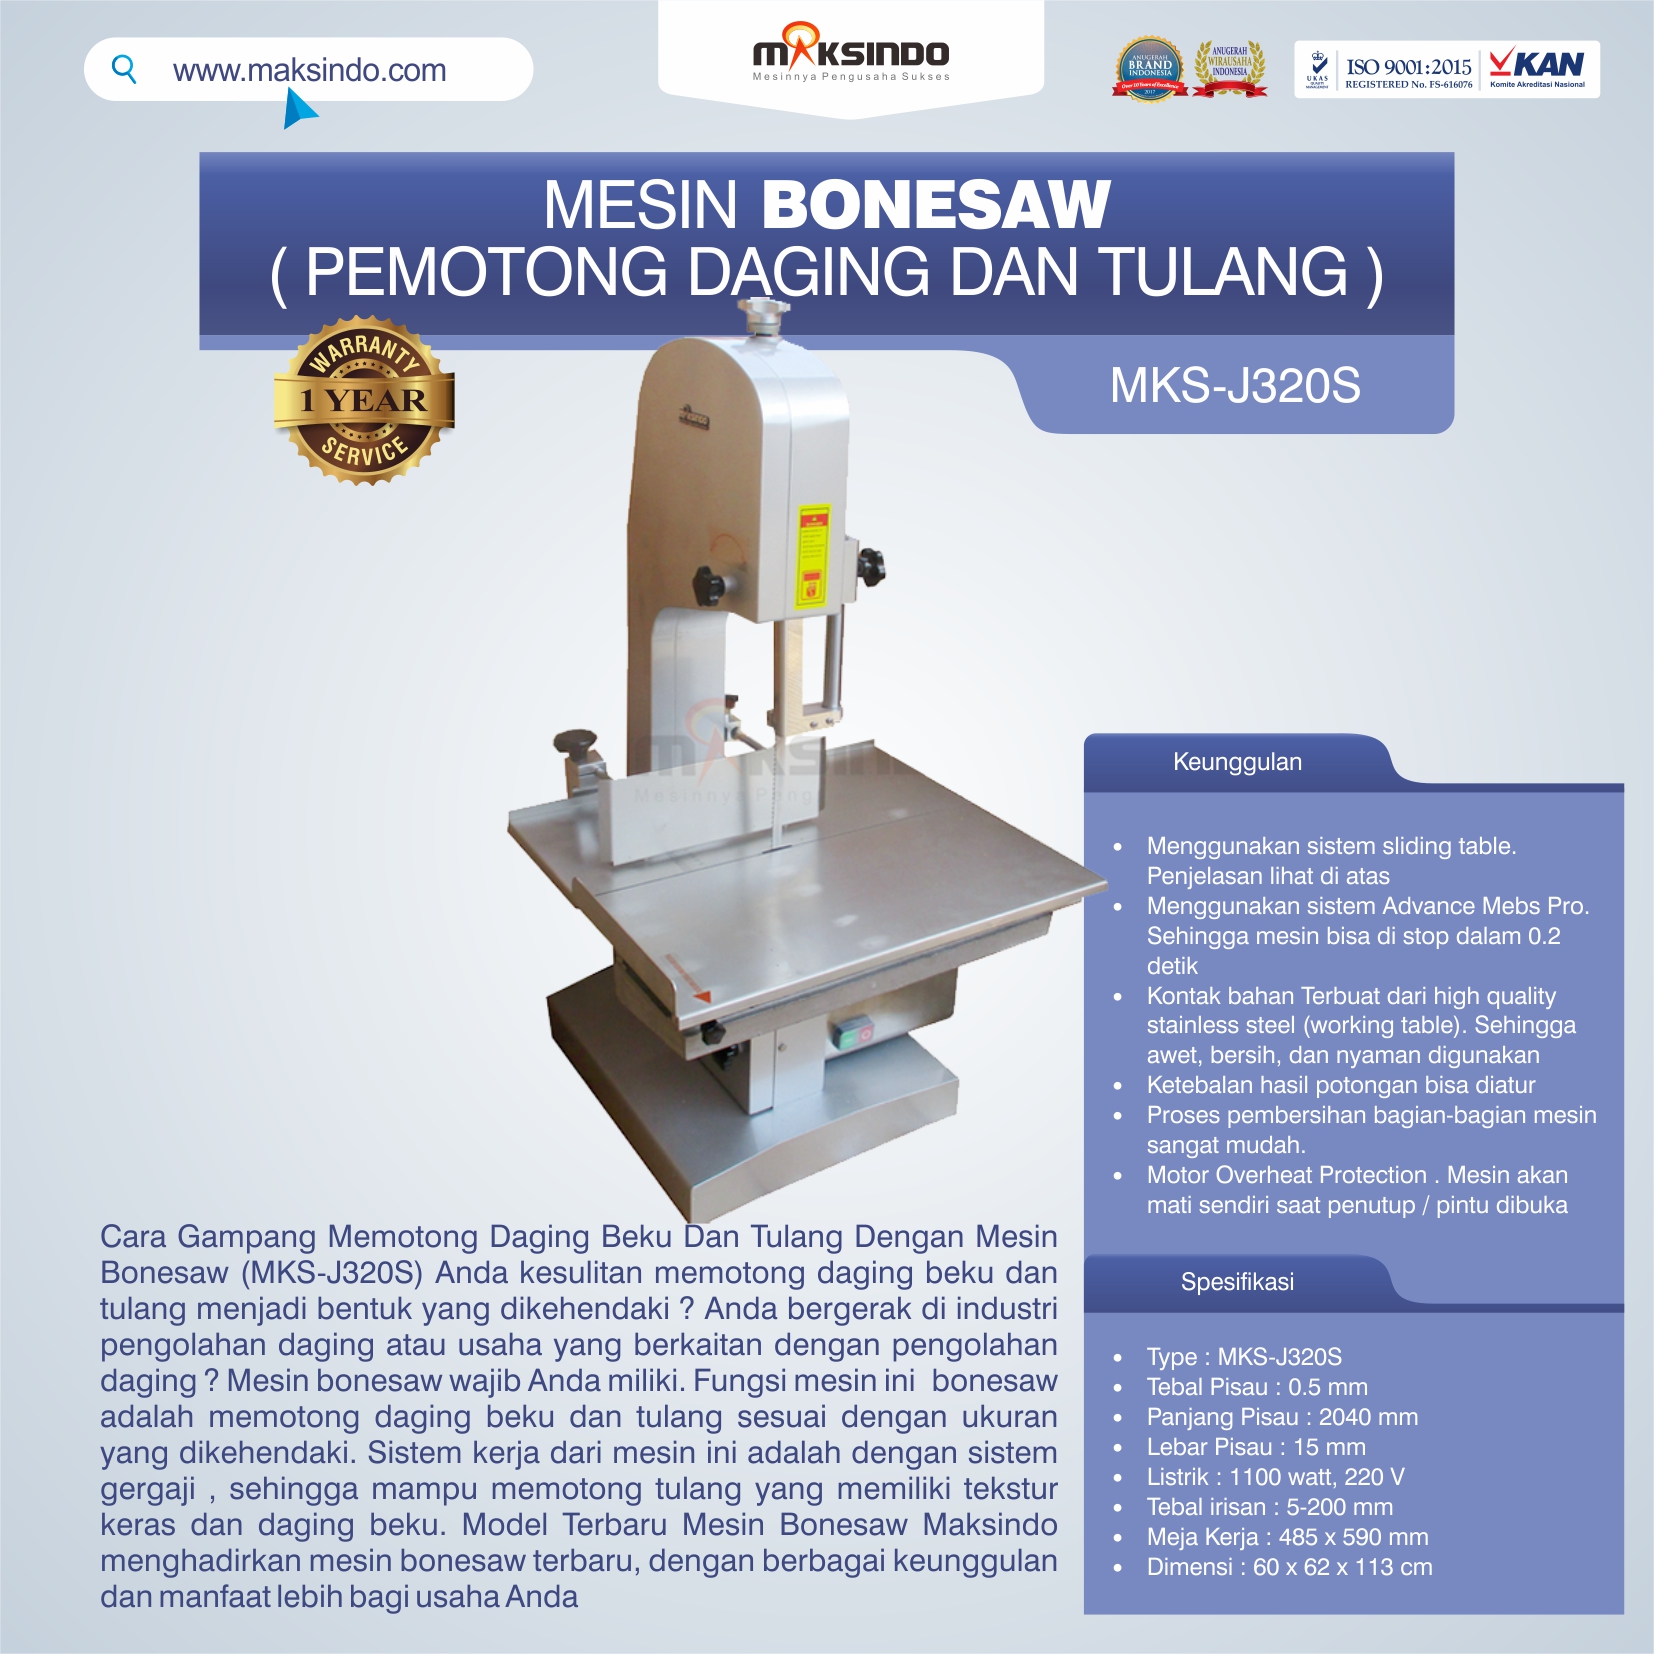 Jual Mesin Bonesaw MKS-J320S (pemotong daging dan tulang) di Tangerang